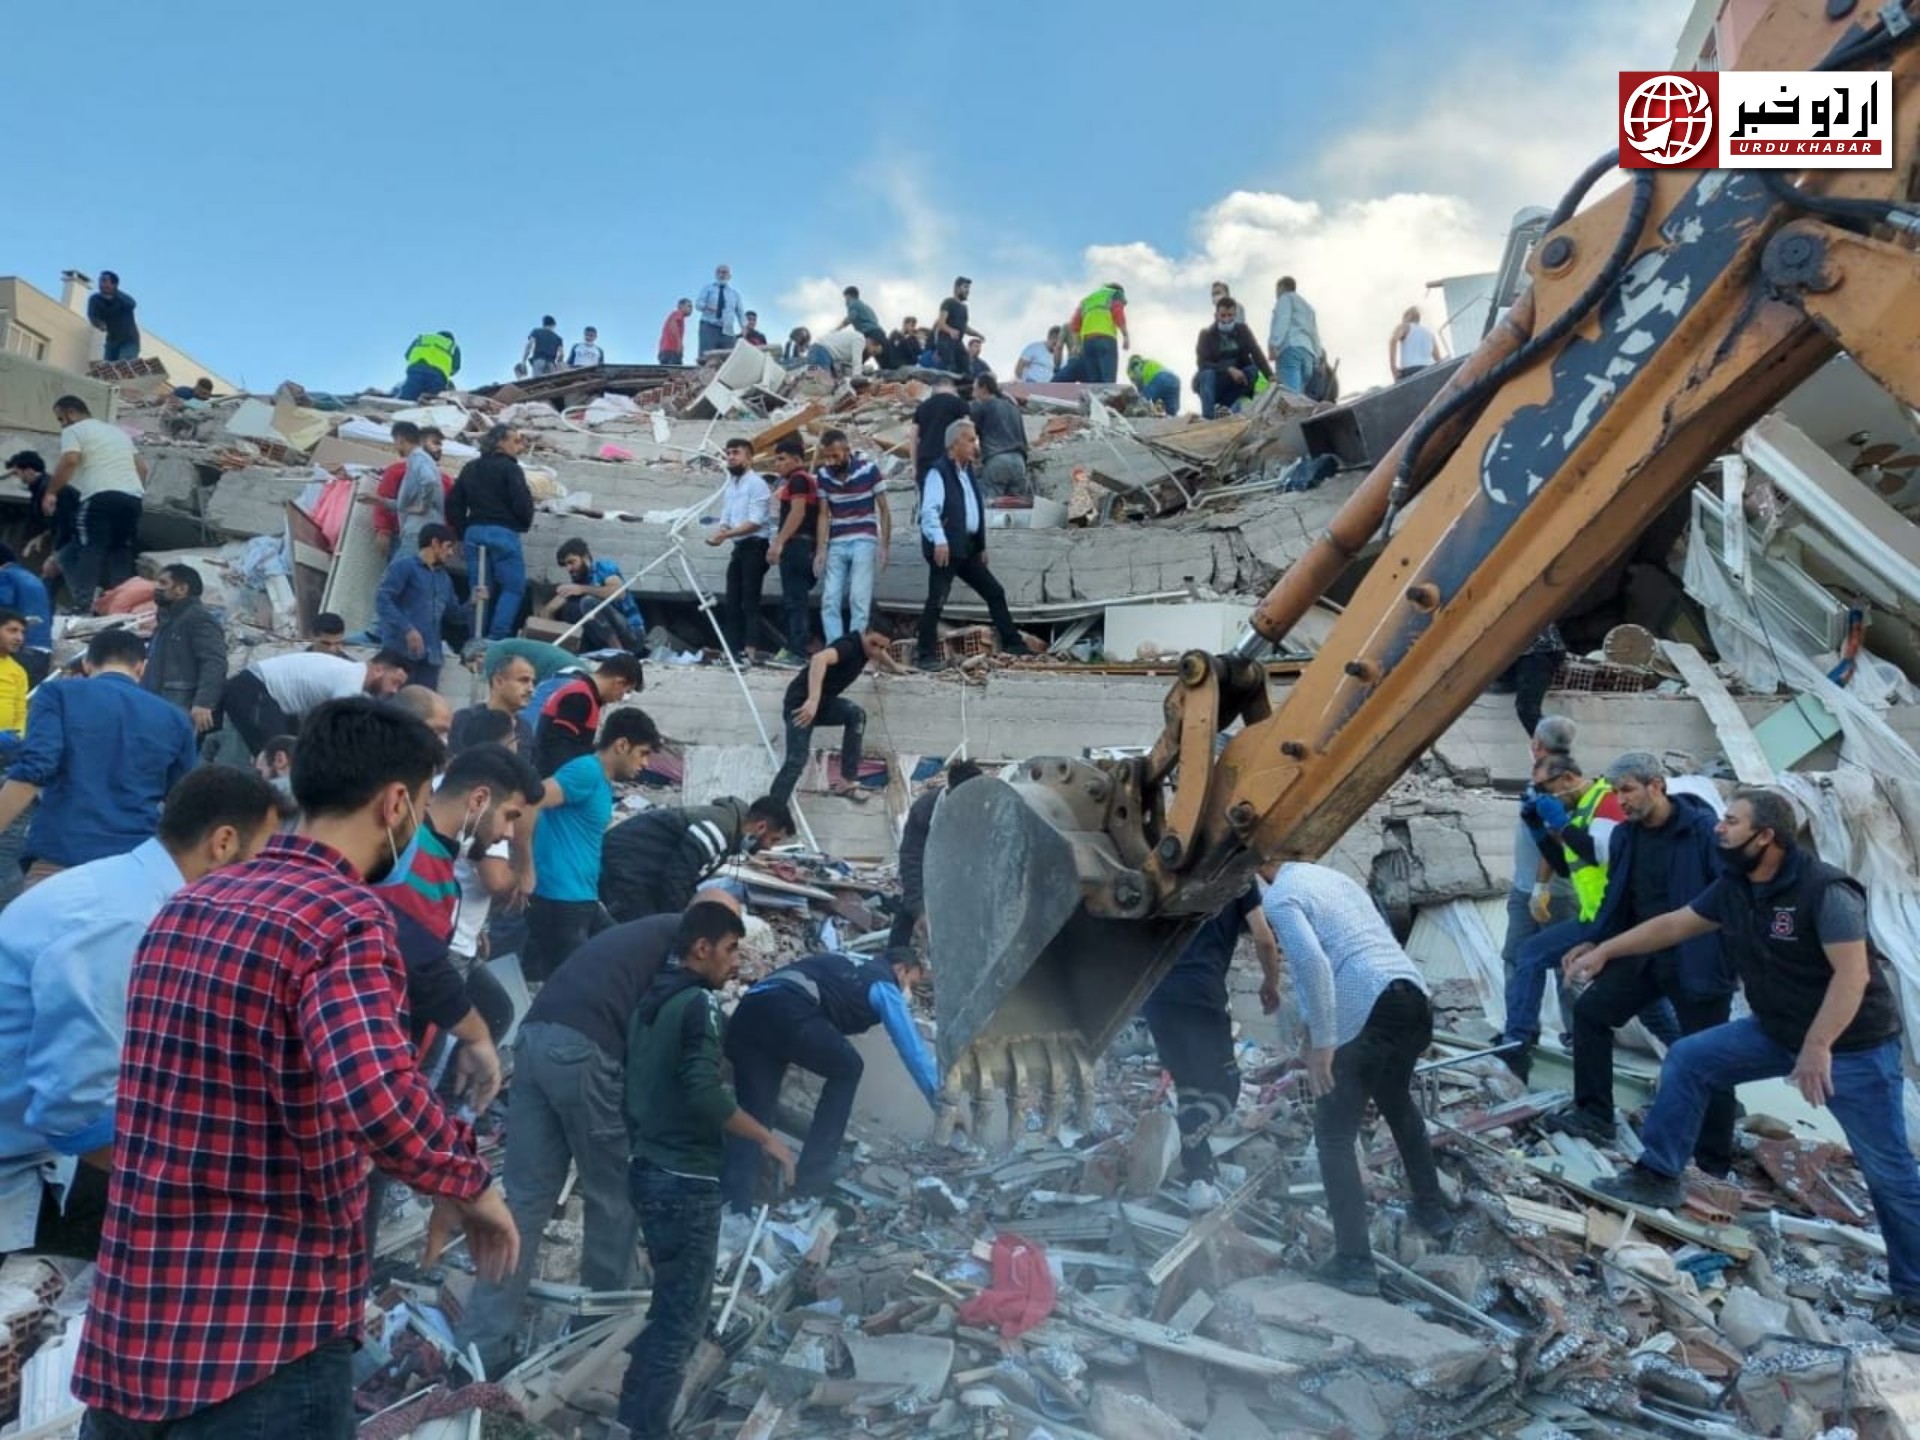 ترکی زلزلے سے اموات کی تعداد 24 ہو گئی، 800 سے زائد زخمی